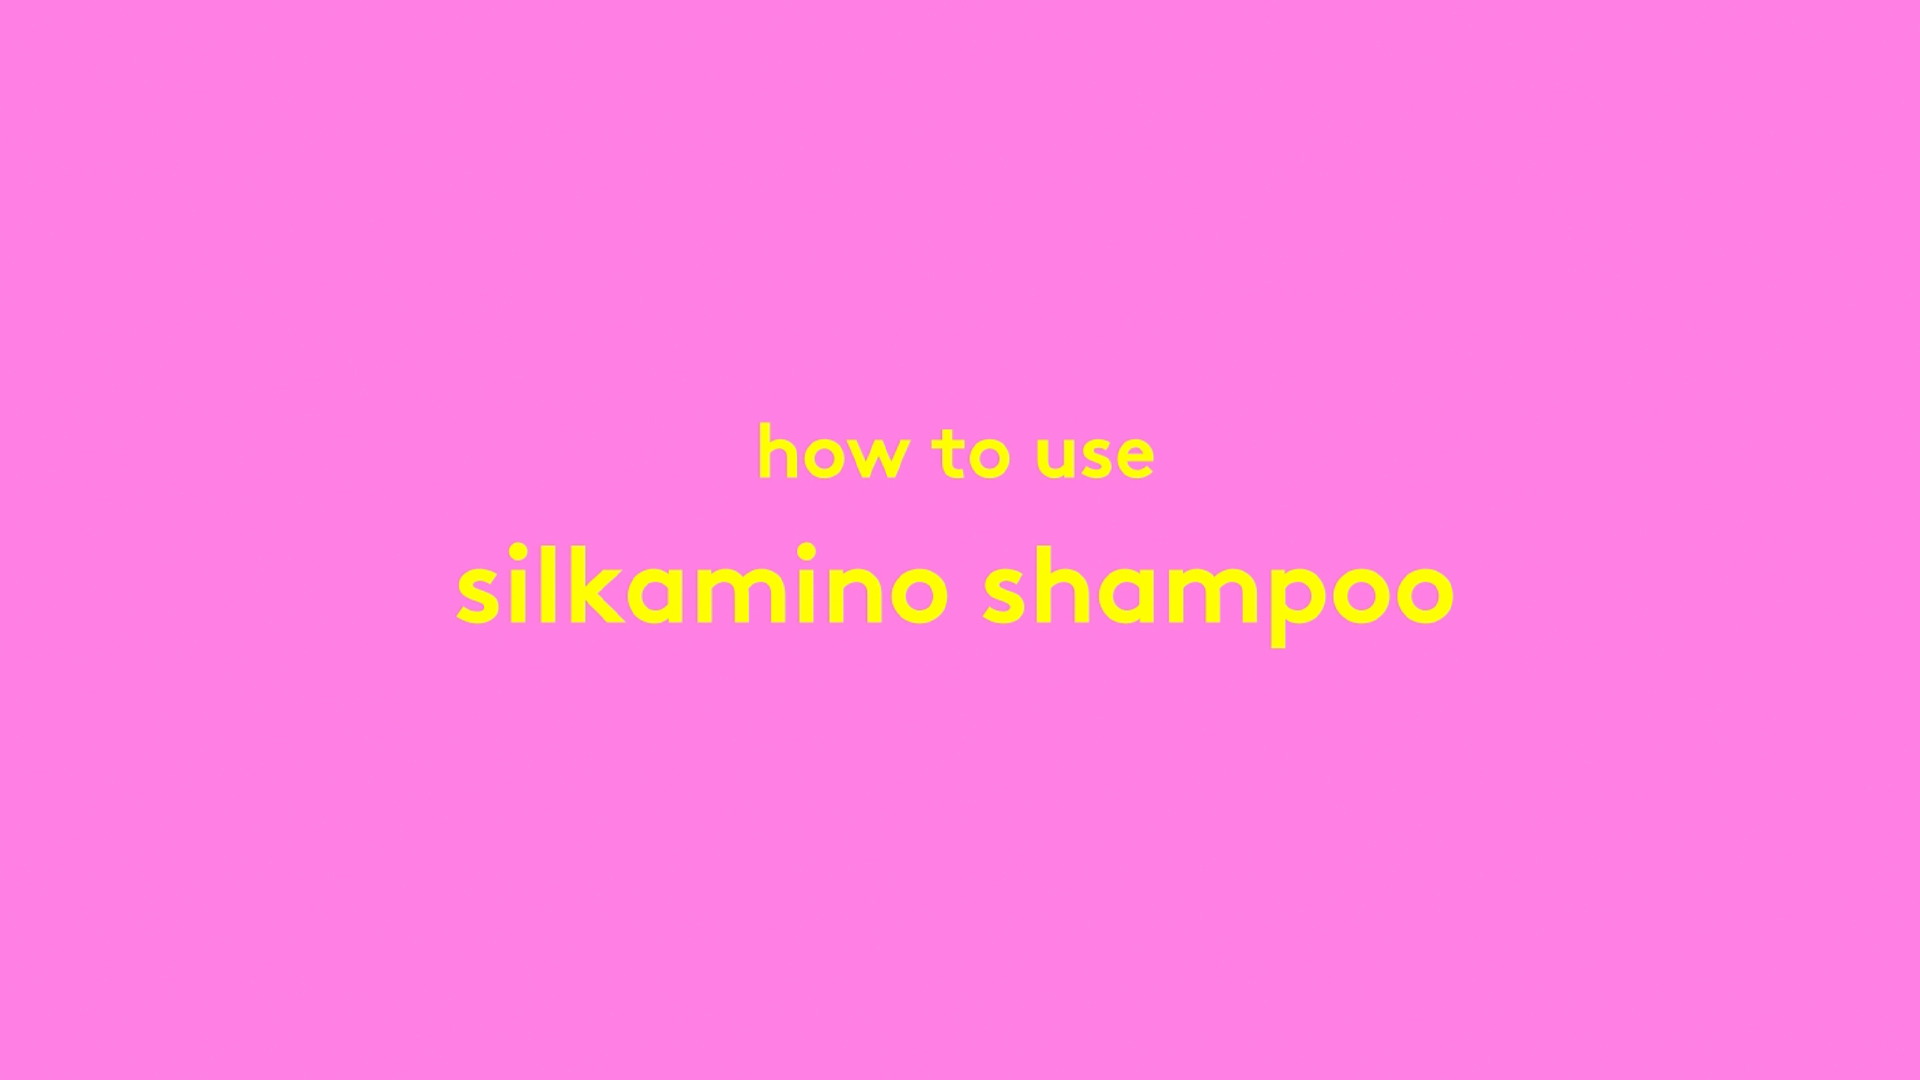 Video mit Chris McMillan, in dem gezeigt wird, wie Silkamino Shampoo zu verwenden ist